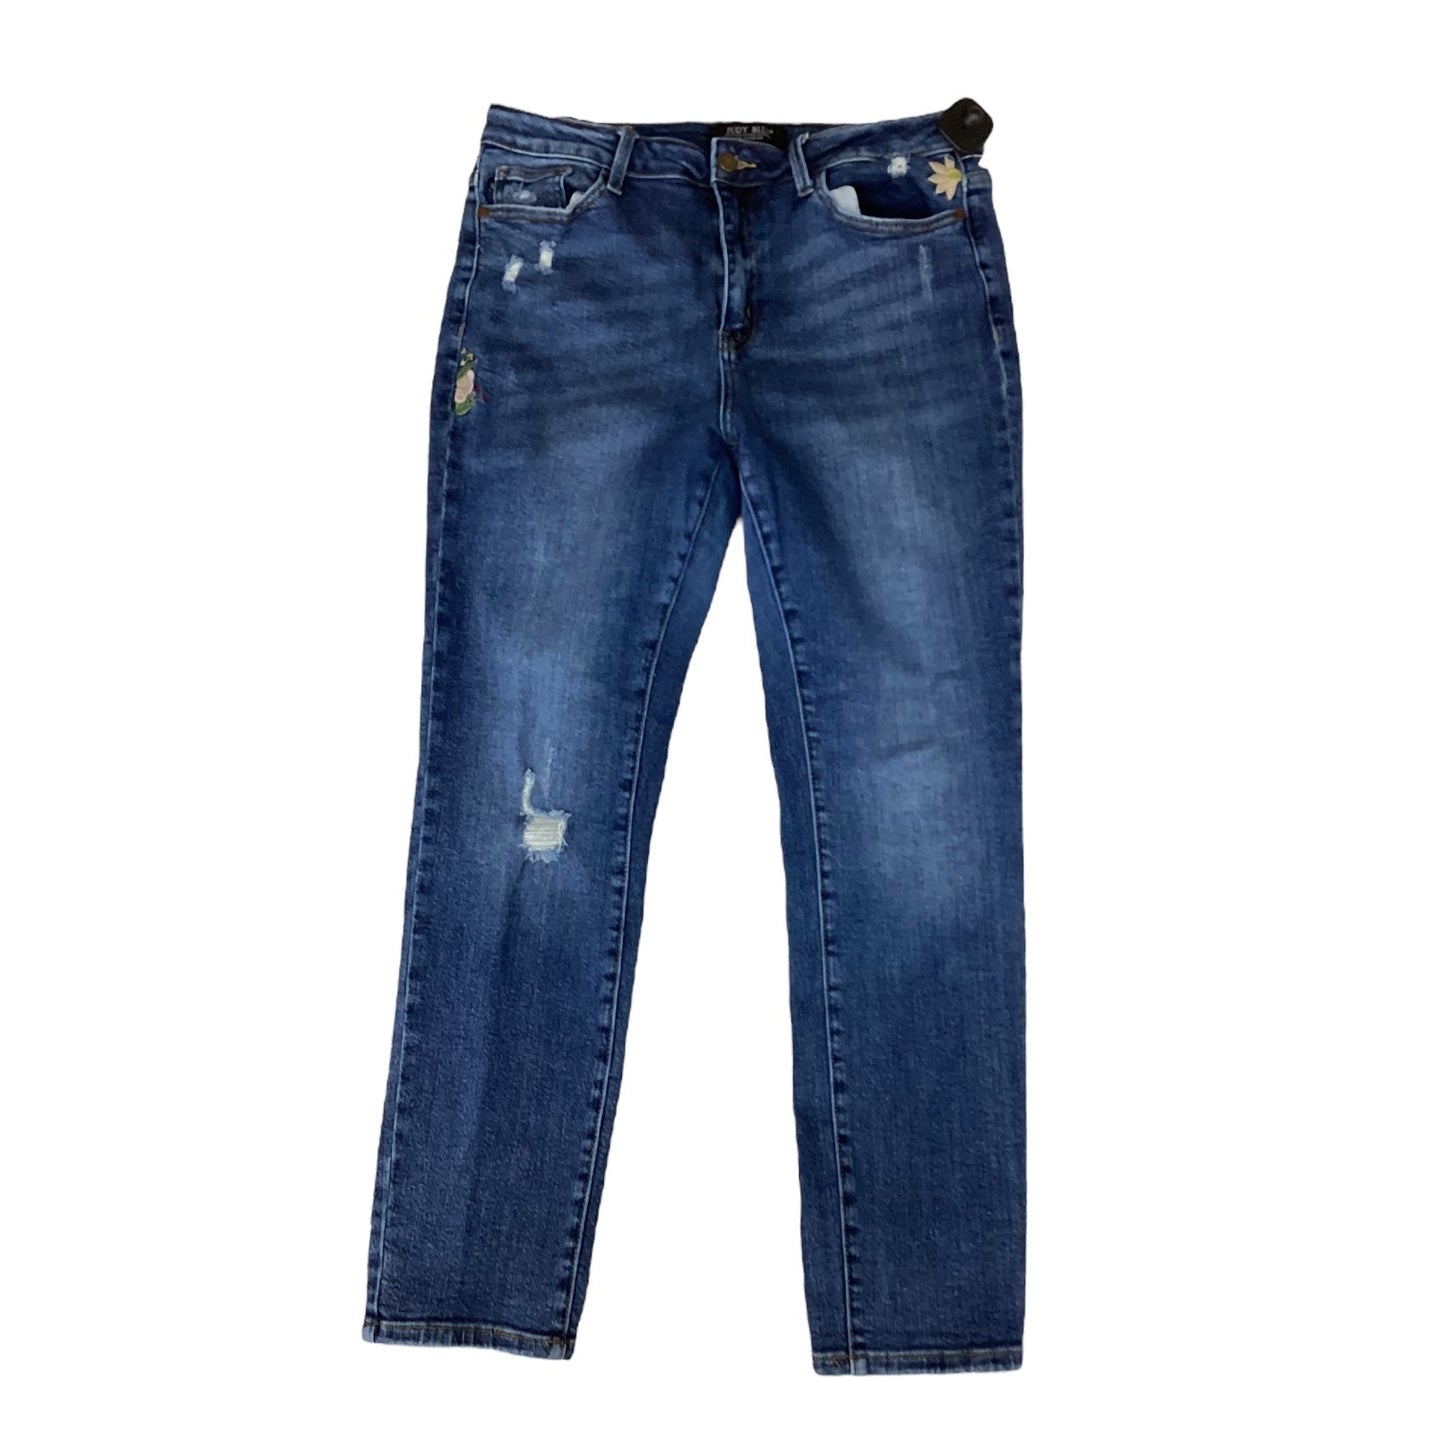 Blue Denim Jeans Designer Judy Blue, Size 10